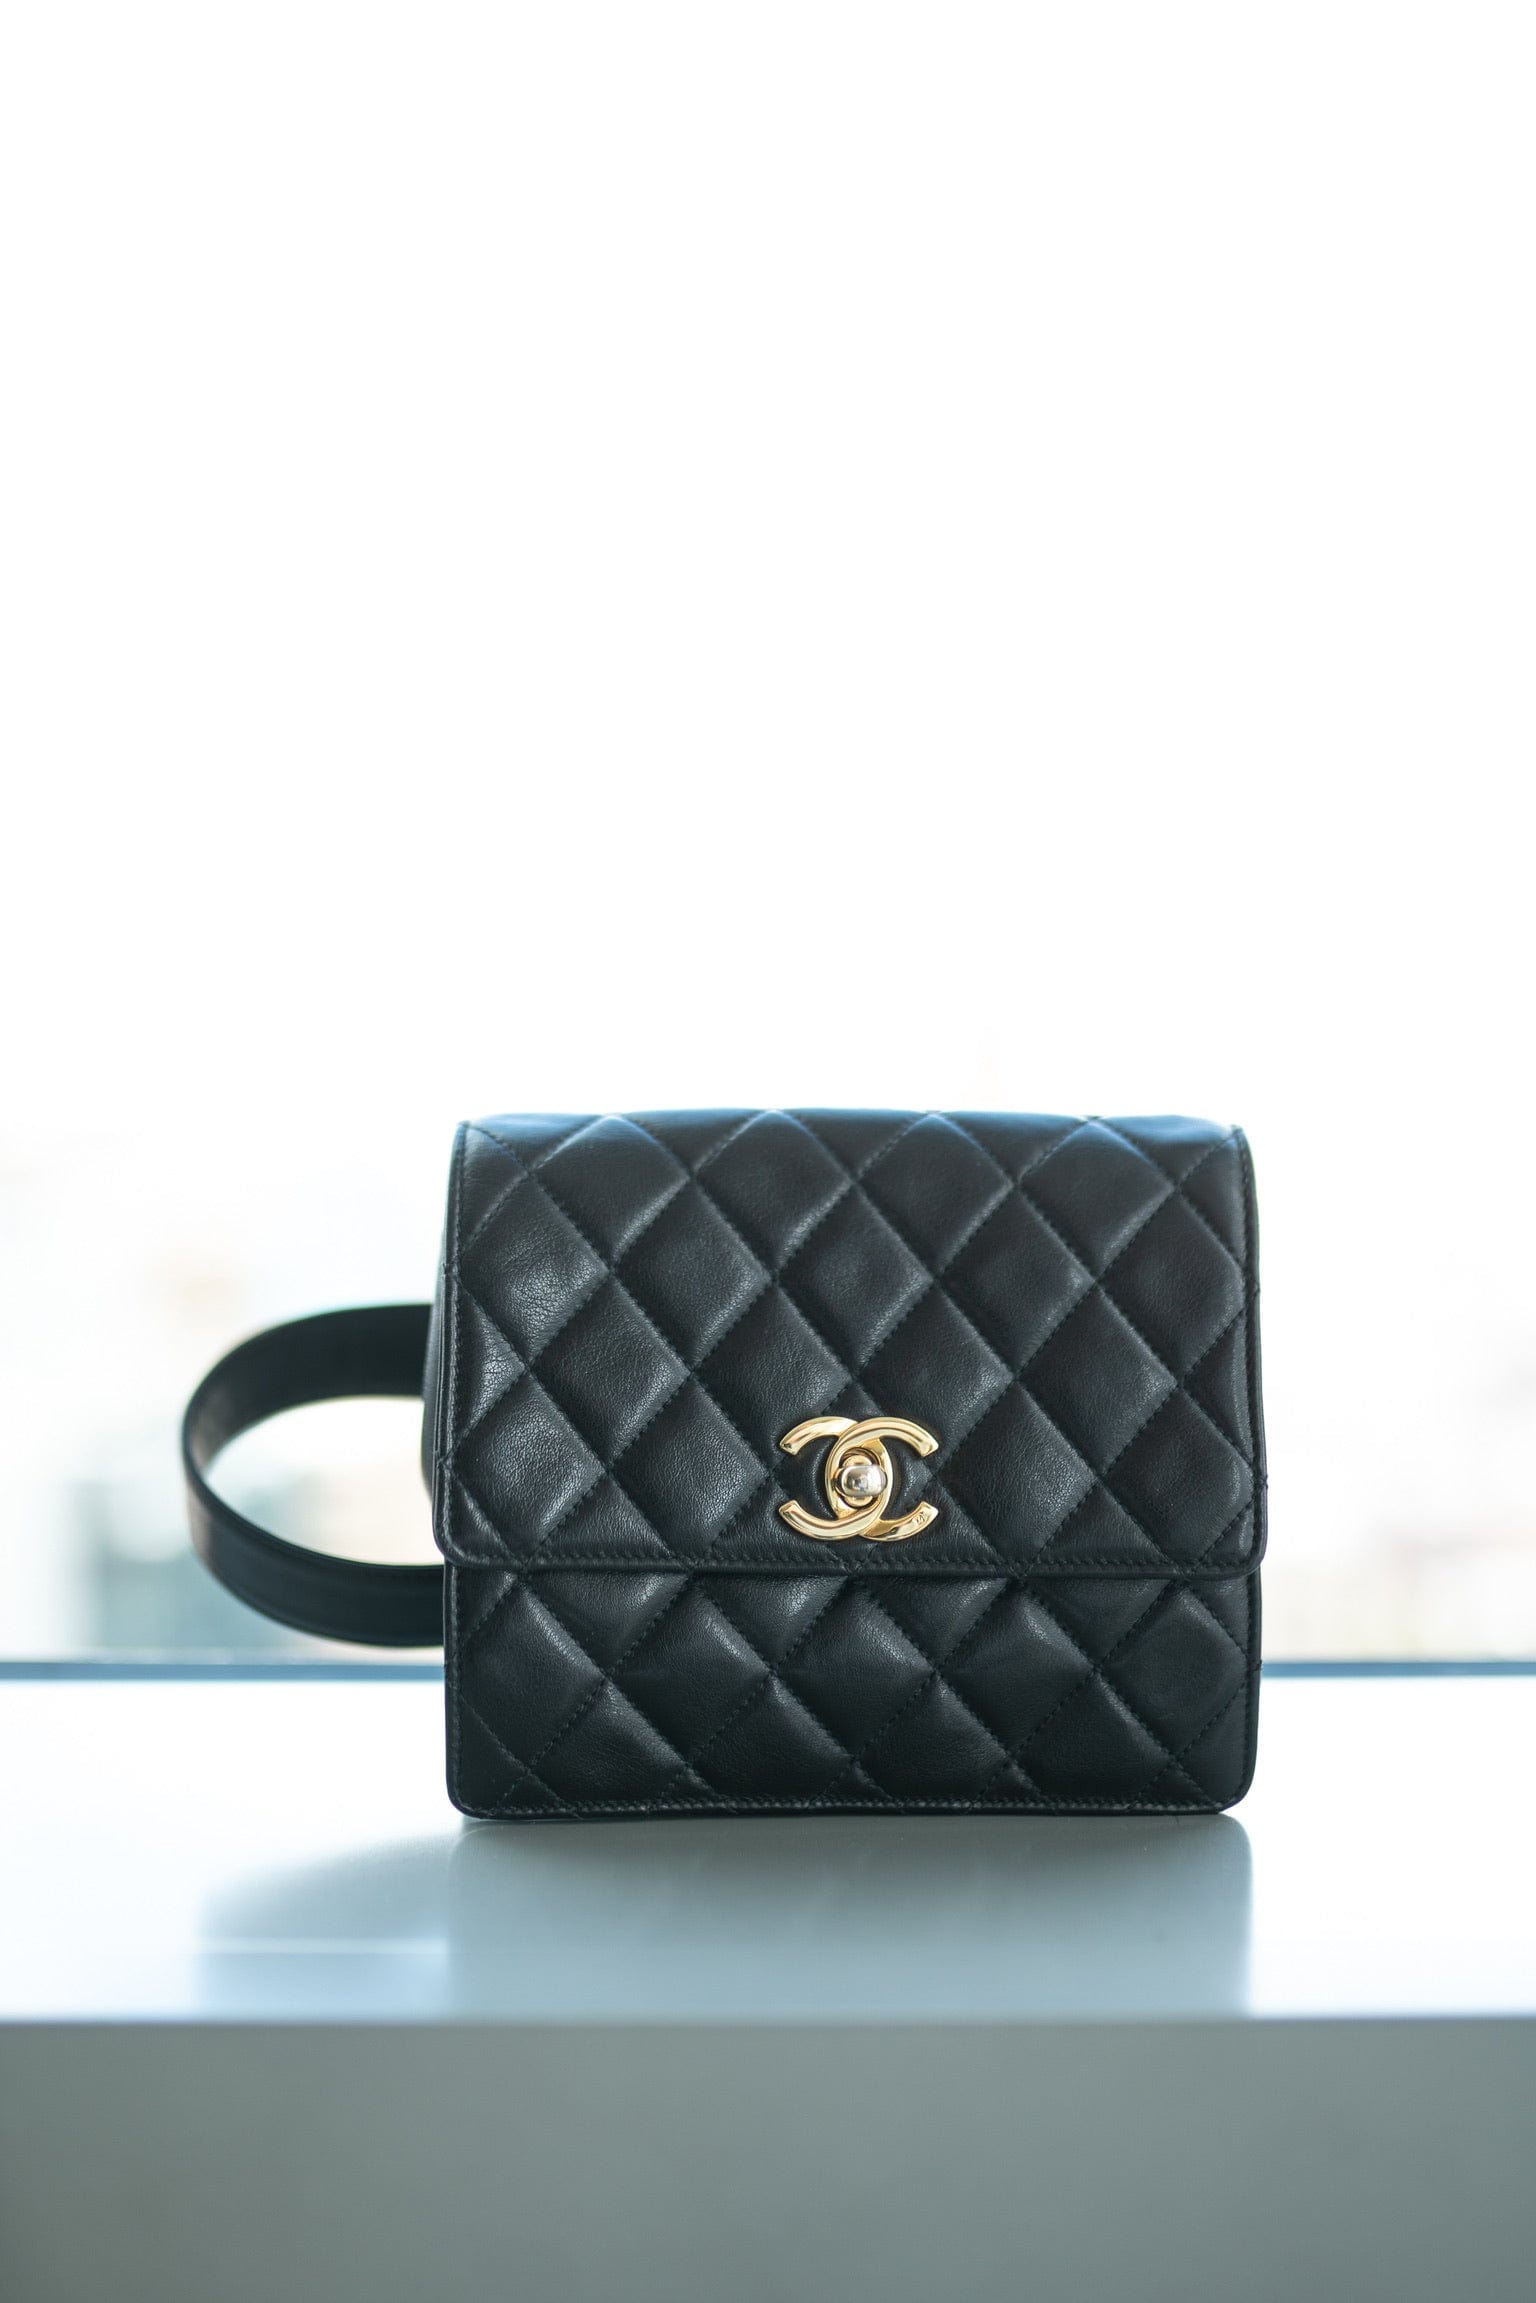 CC Matelasse Belt Bag Chanel – LAB